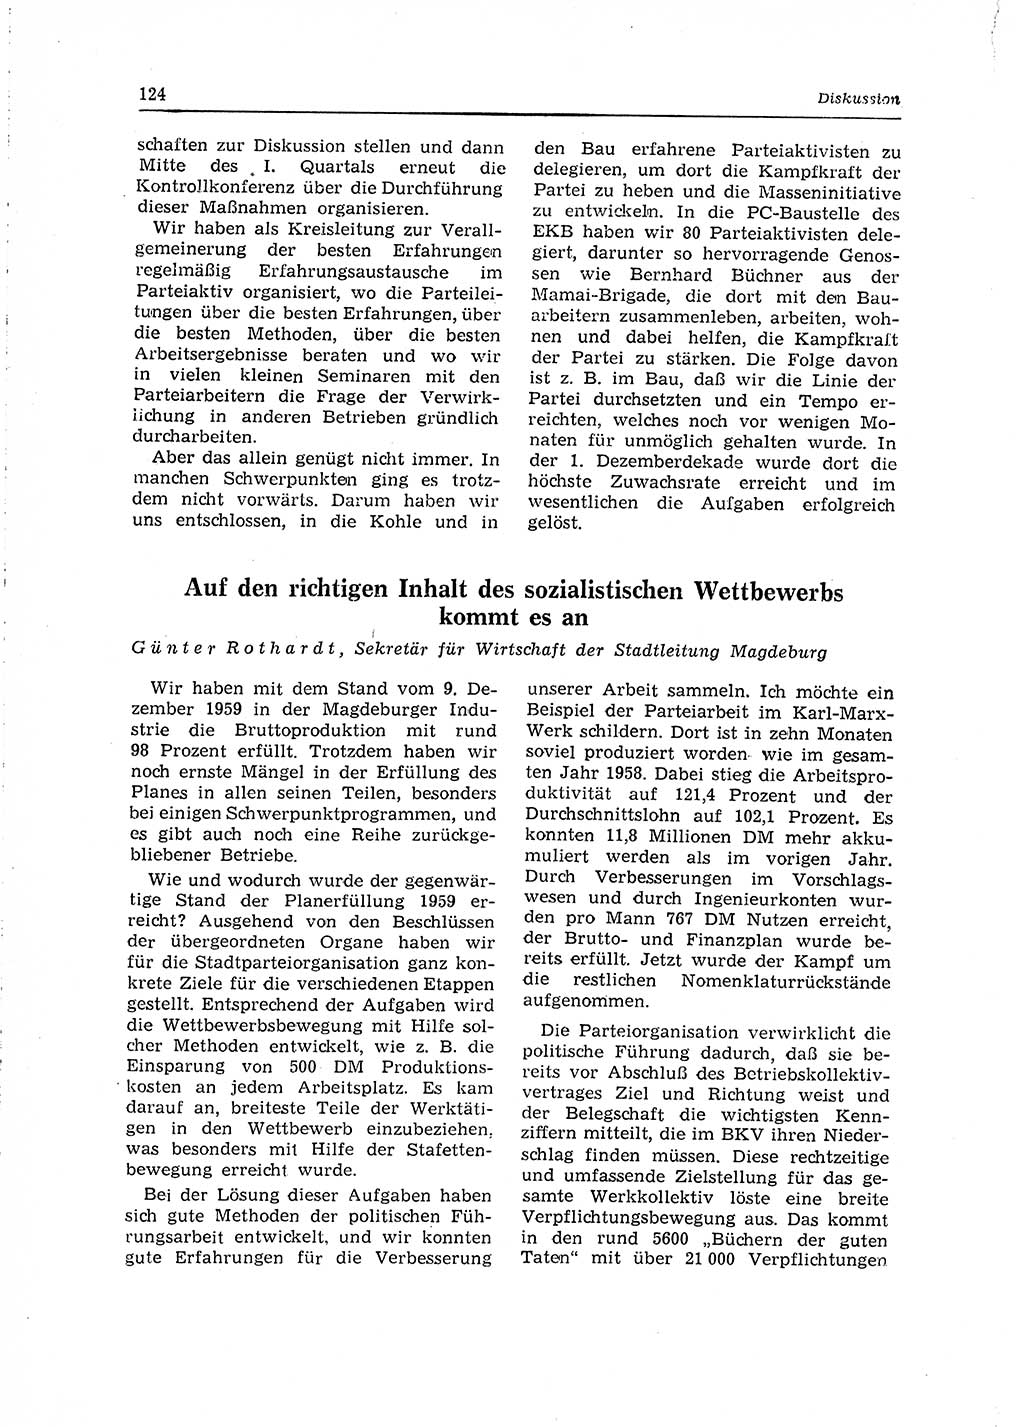 Neuer Weg (NW), Organ des Zentralkomitees (ZK) der SED (Sozialistische Einheitspartei Deutschlands) für Fragen des Parteilebens, 15. Jahrgang [Deutsche Demokratische Republik (DDR)] 1960, Seite 124 (NW ZK SED DDR 1960, S. 124)